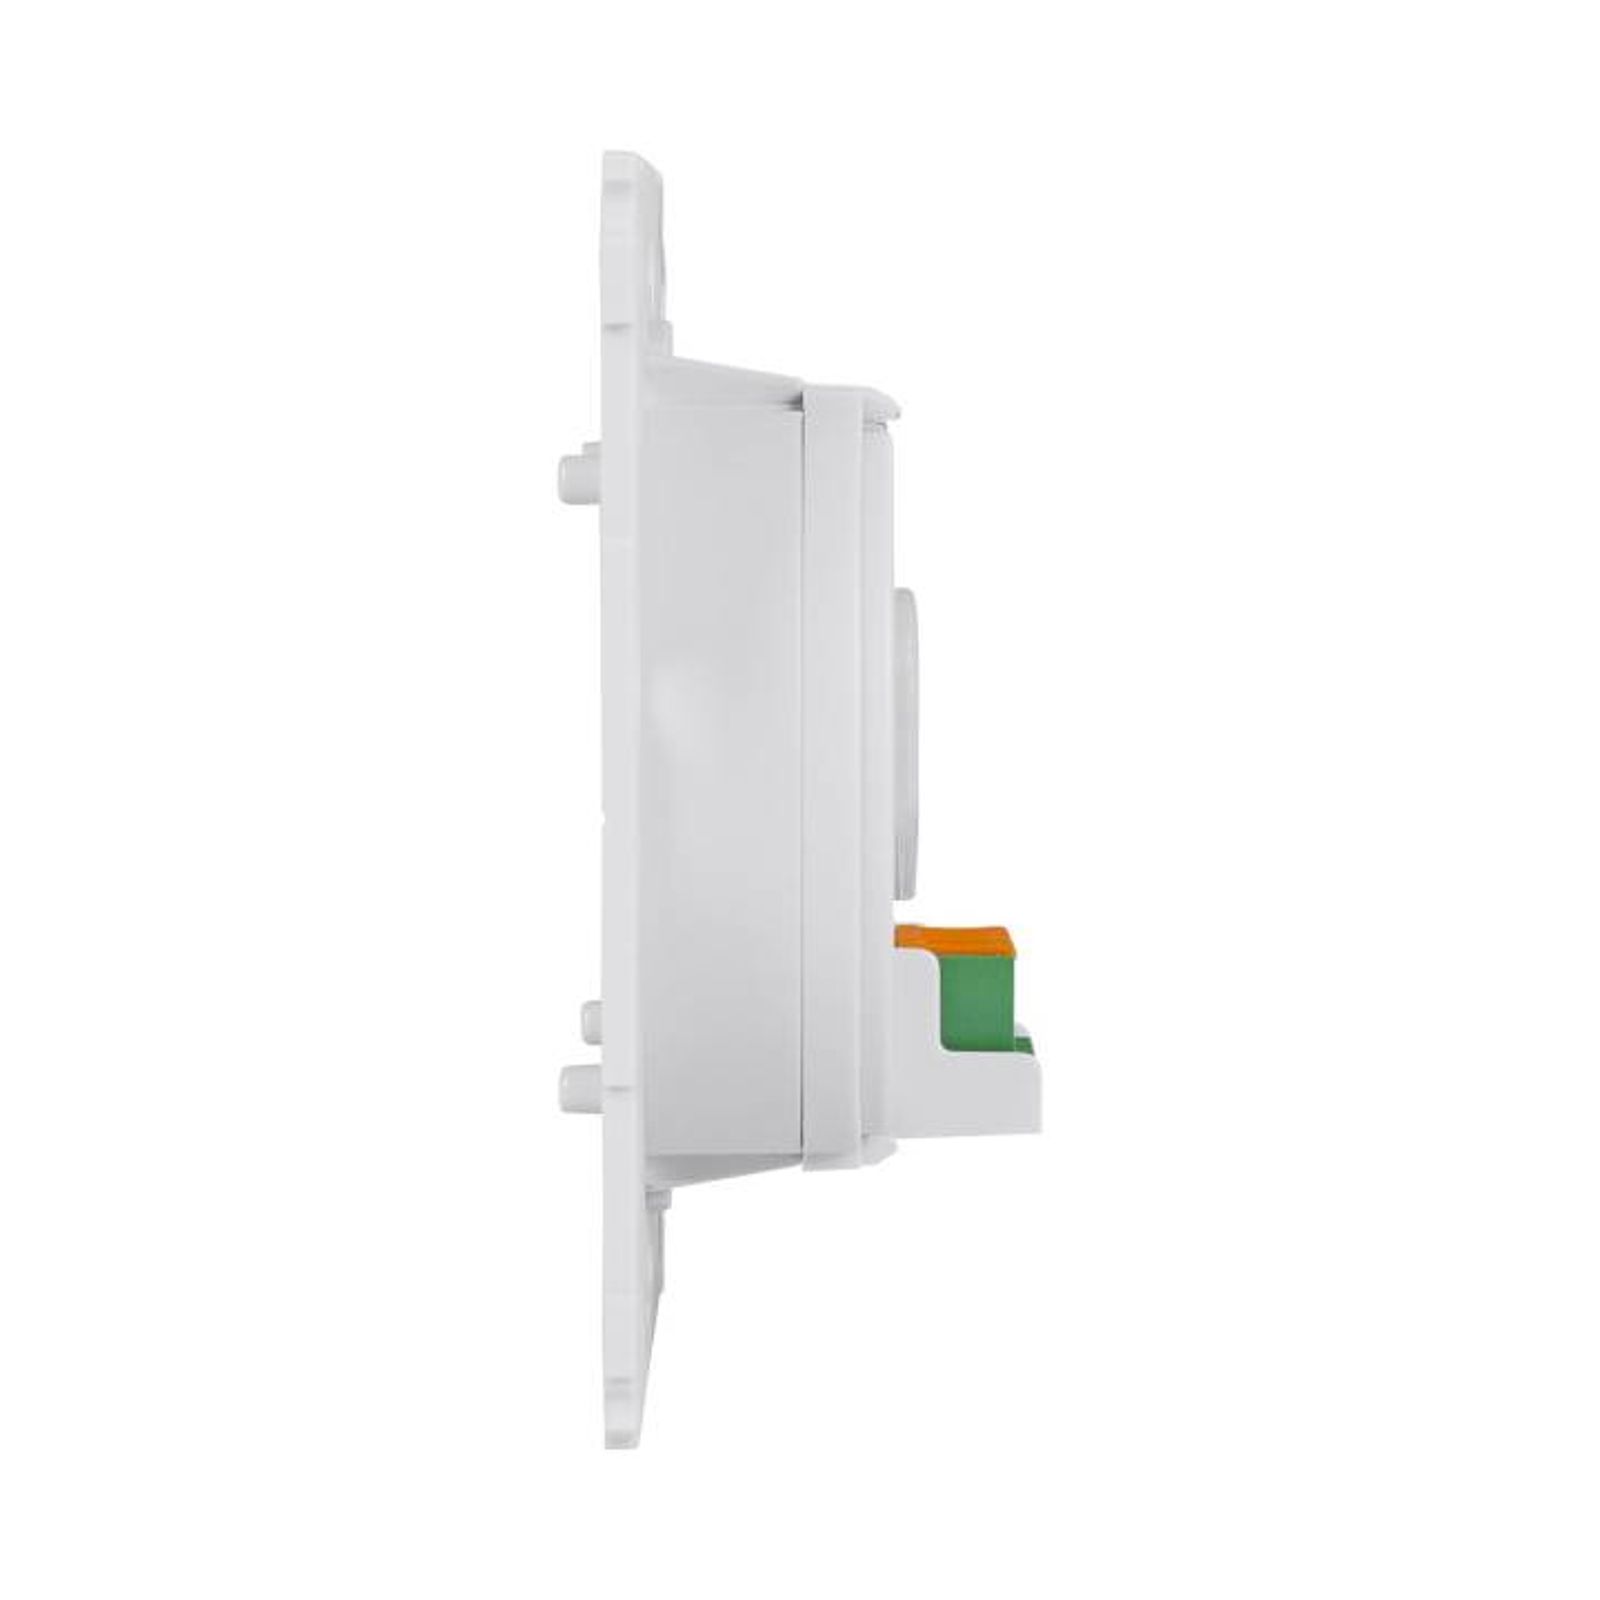 Homematic IP Wired Smart Home Wandtaster für Markenschalter HmIPW-BRC2 - 2-fach